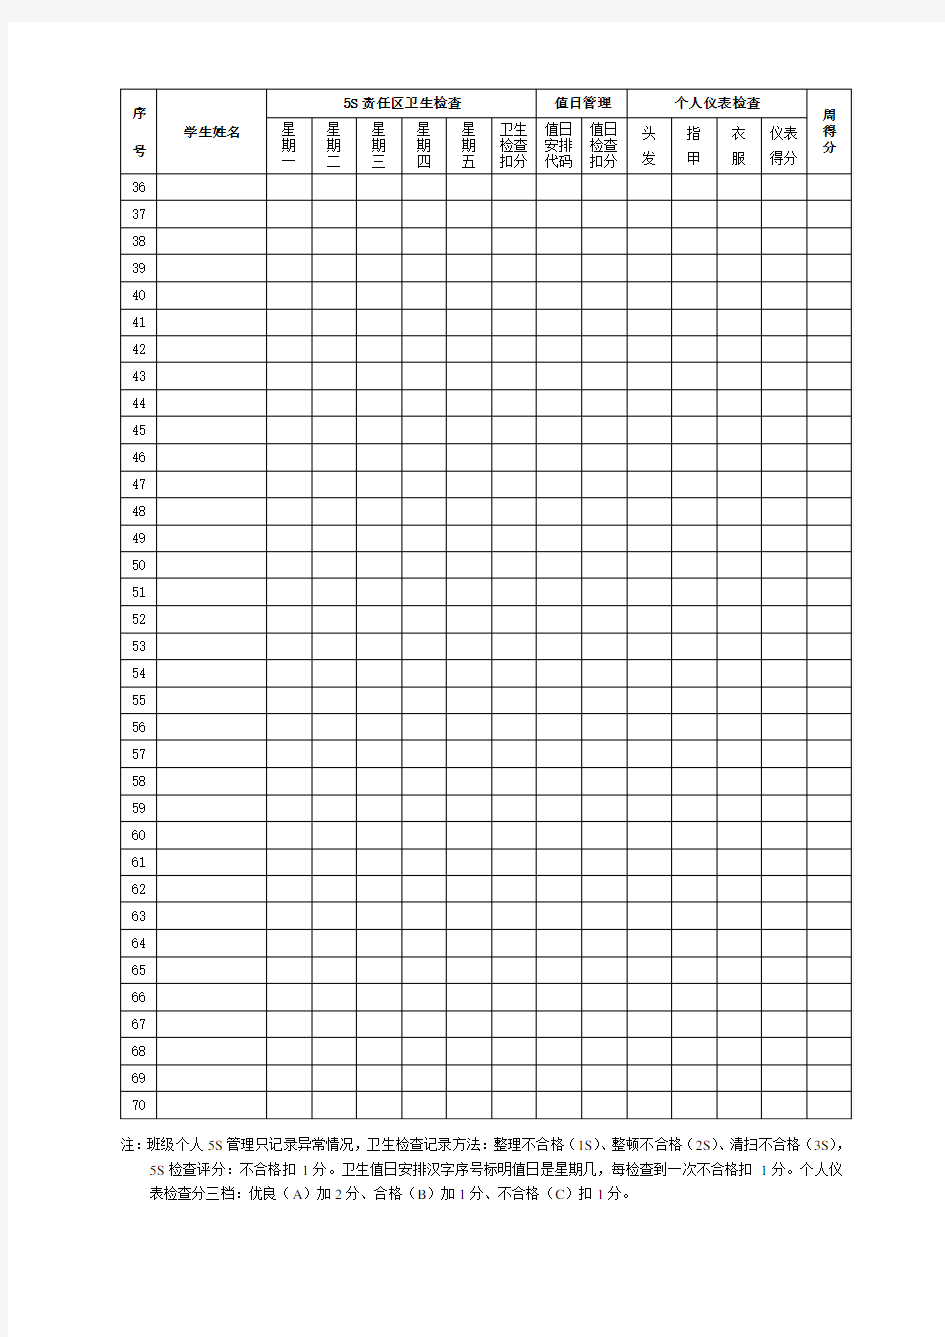 生活委员-班级卫生值日管理记录表(周表)